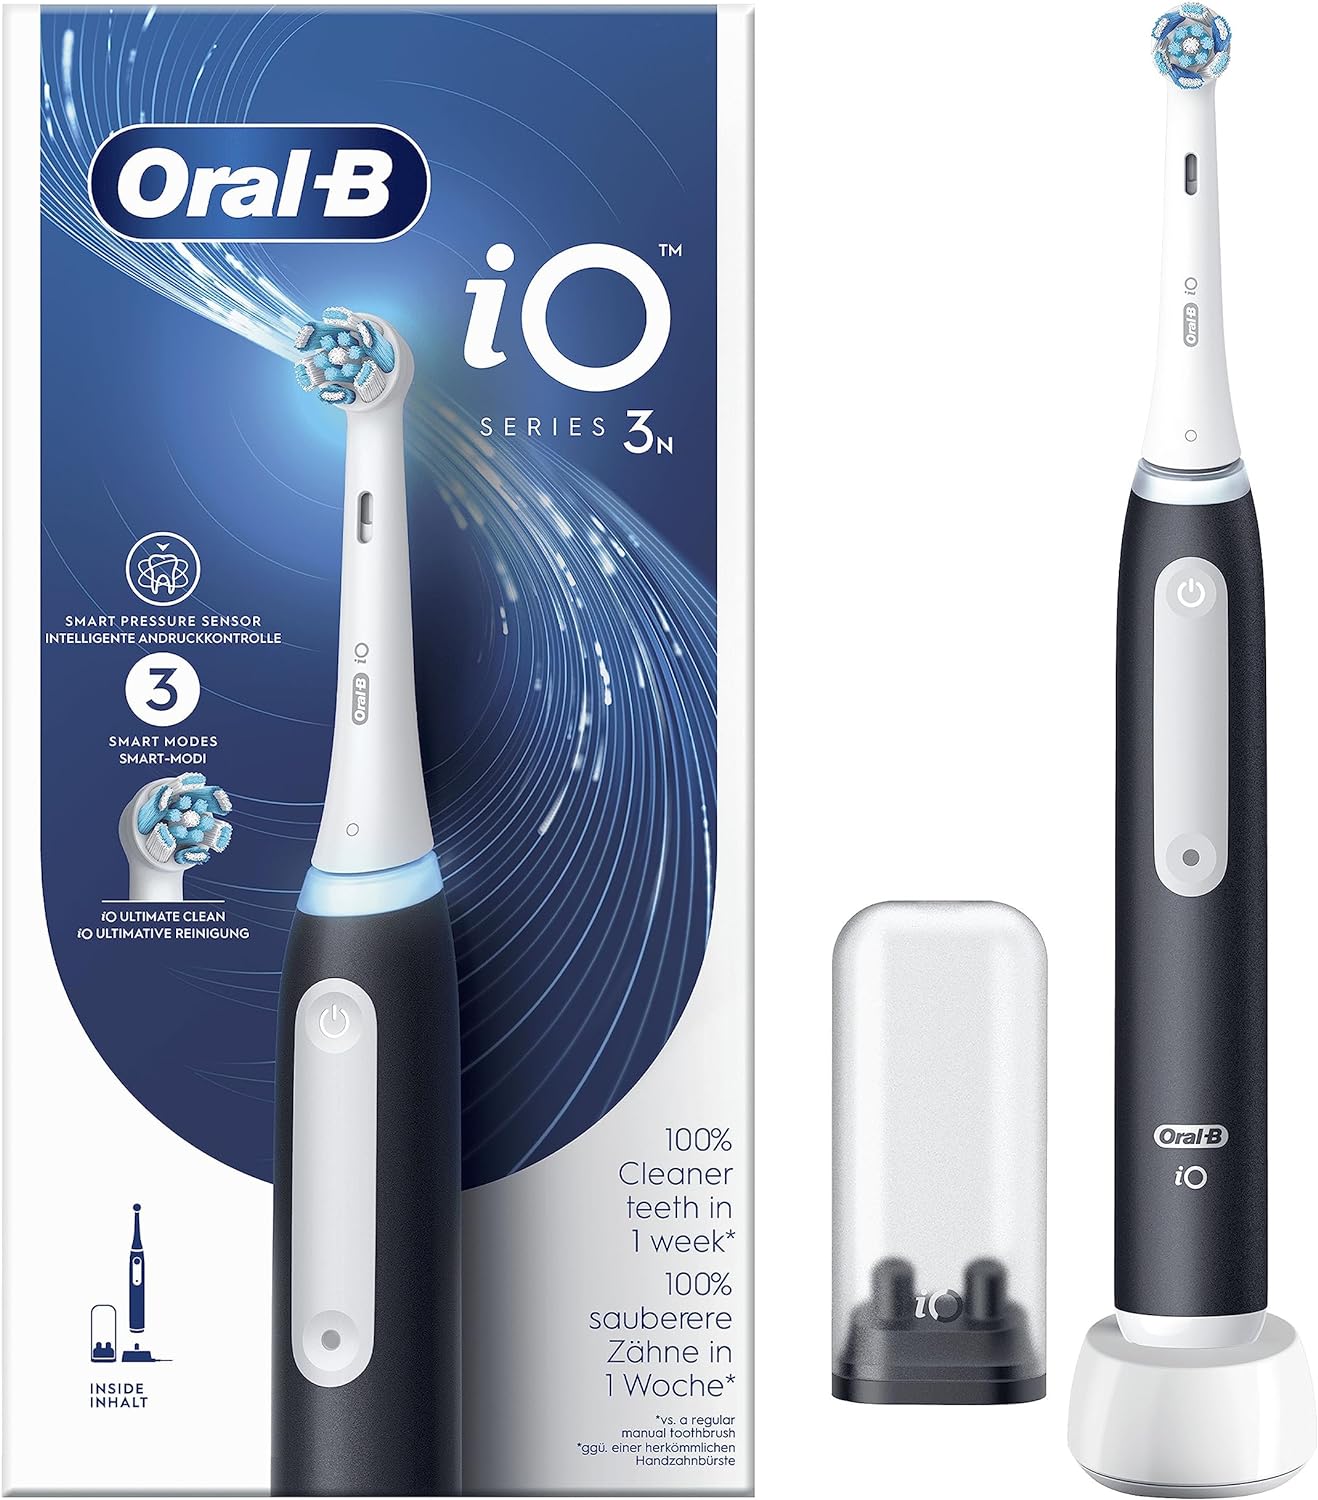 Oral-B iO 3 vs Oral-B iO 5 vs Oral-B iO 4 vs Oral-B iO 7